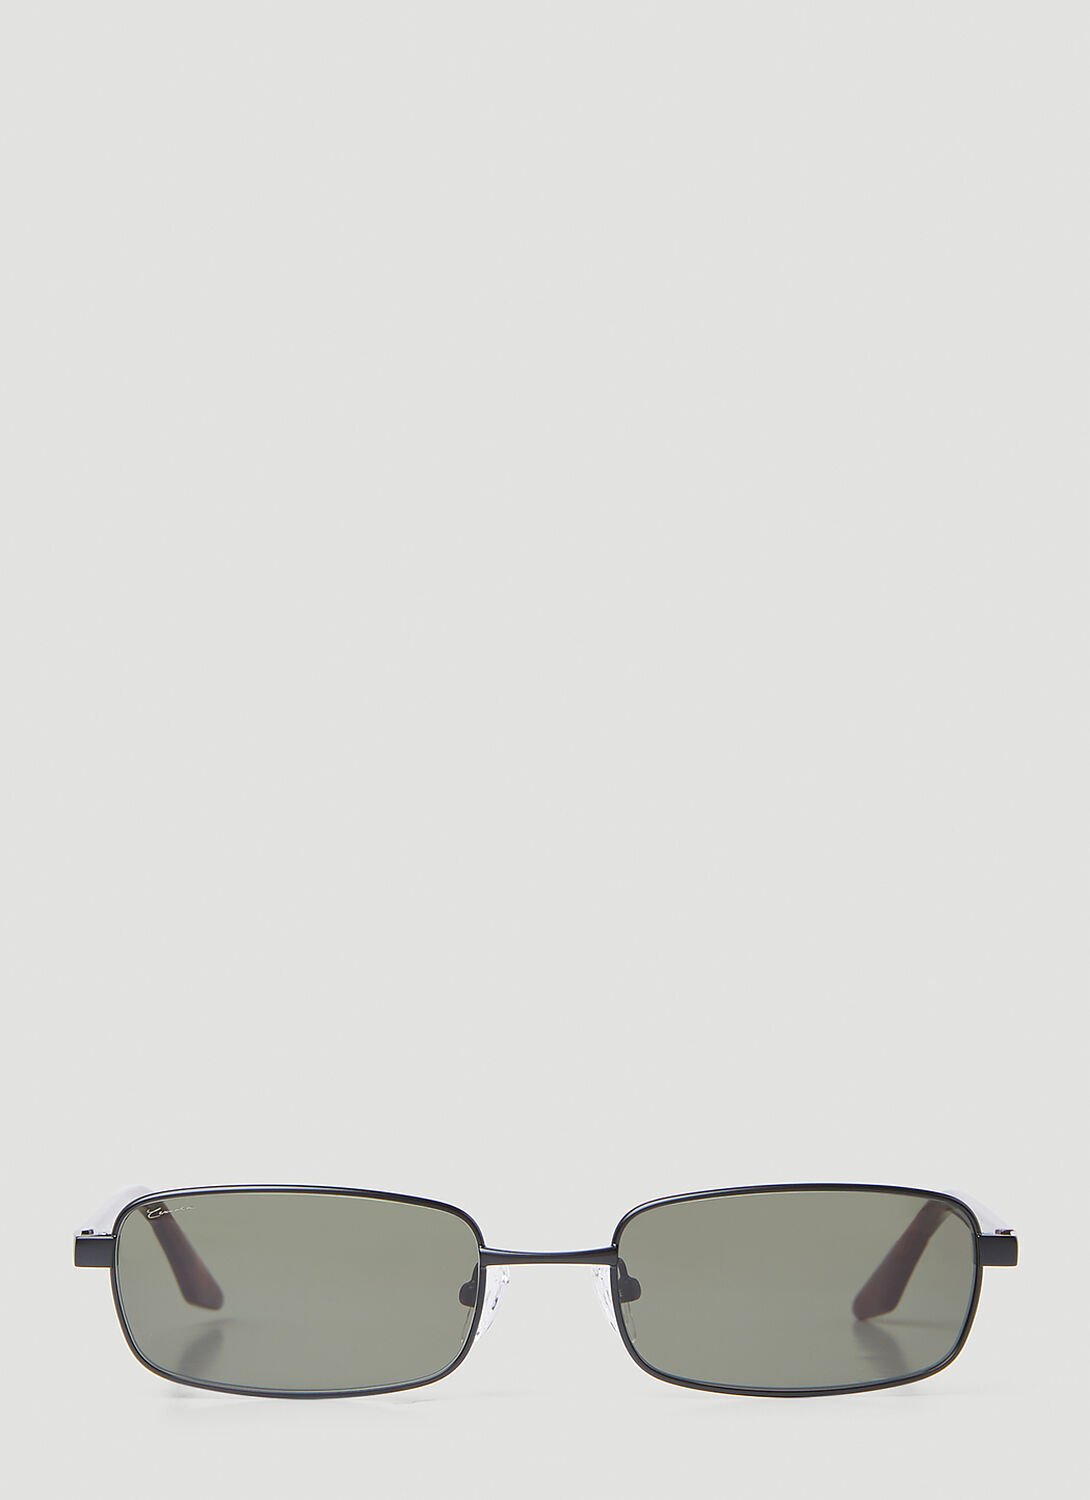 Lexxola Kenny Sunglasses In Grey